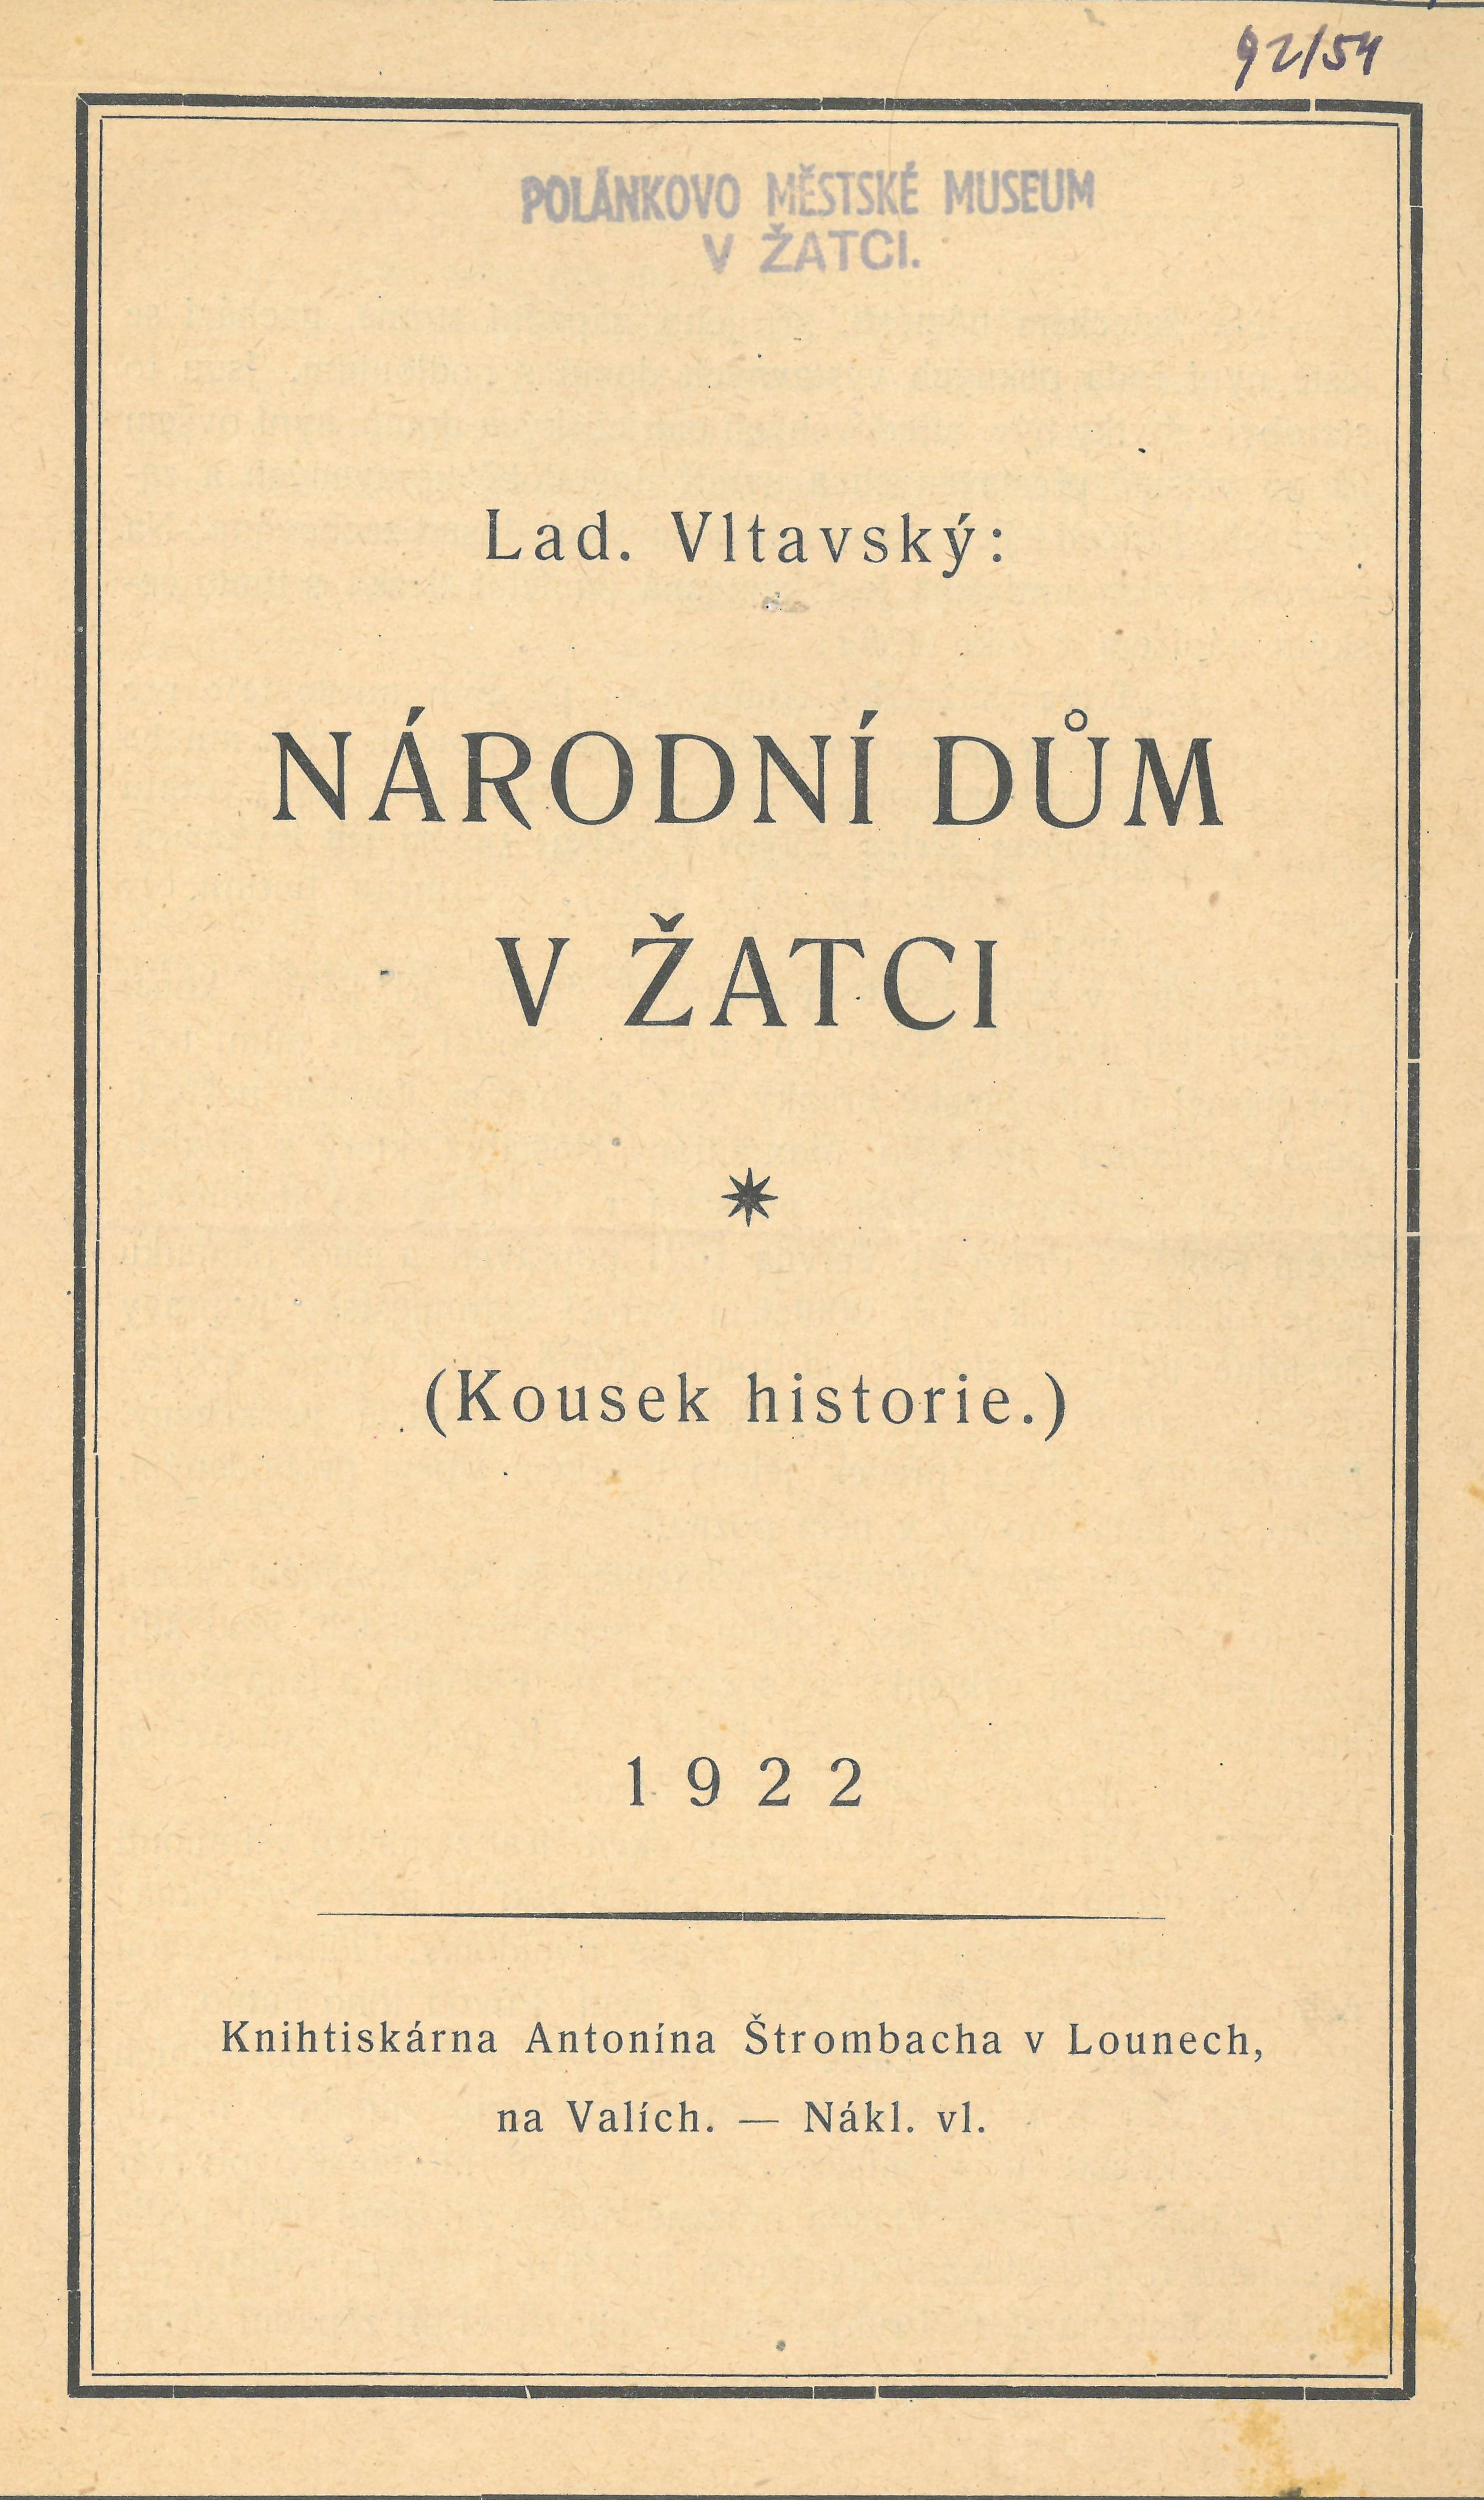 Titulka Vltavského brožuru Národní dům